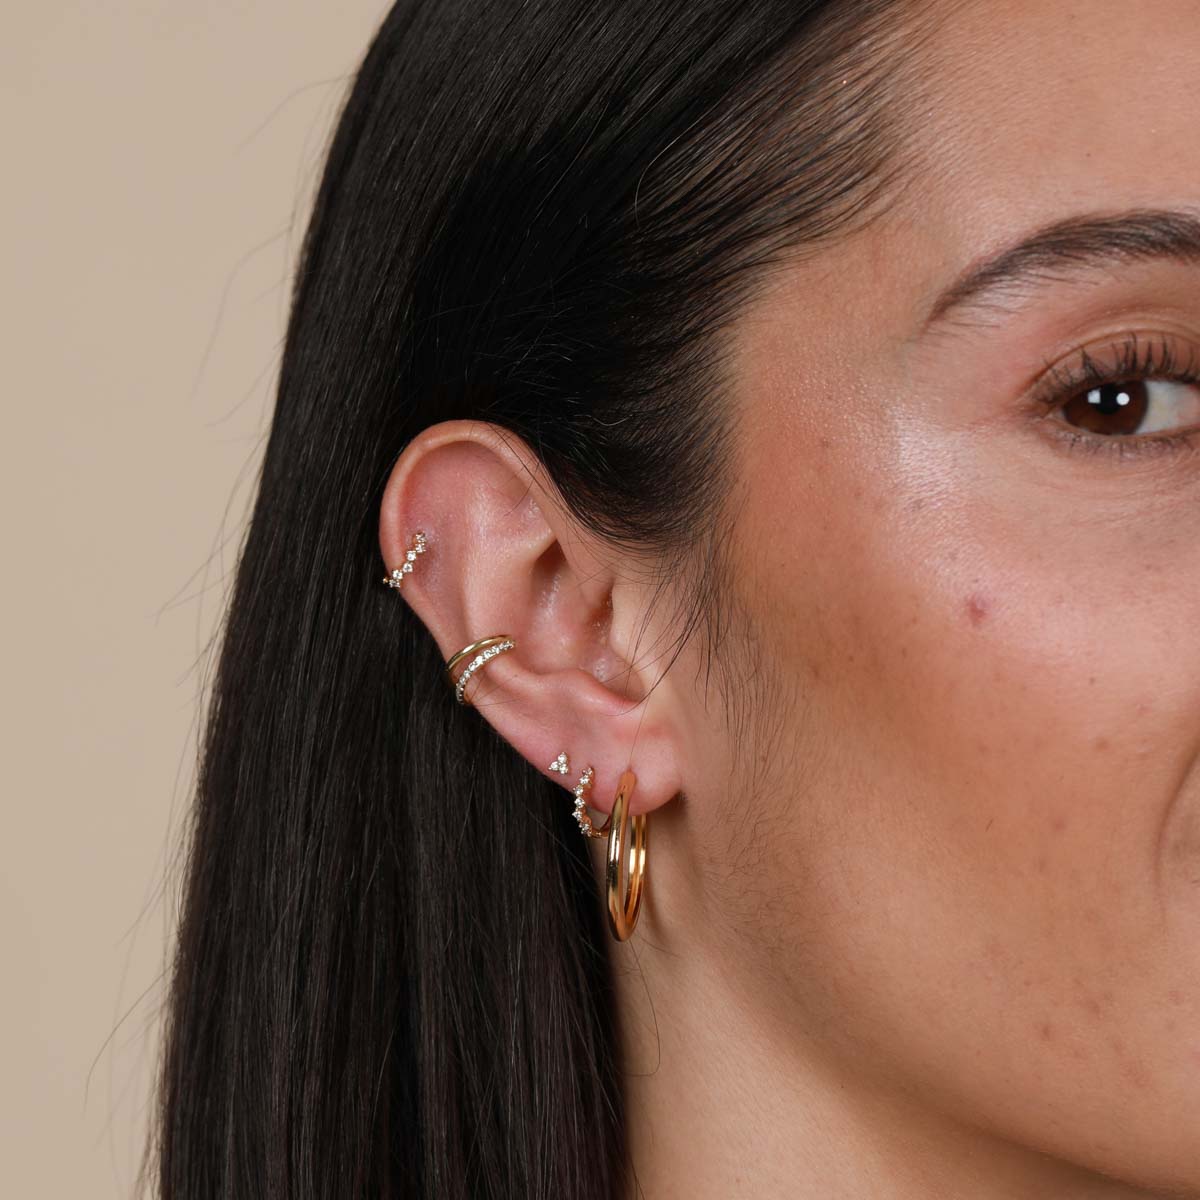 MyBeauty Men Women Rhinestone Cartilage Tragus Bar Helix Upper Ear Earring  Stud Jewelry - Walmart.com